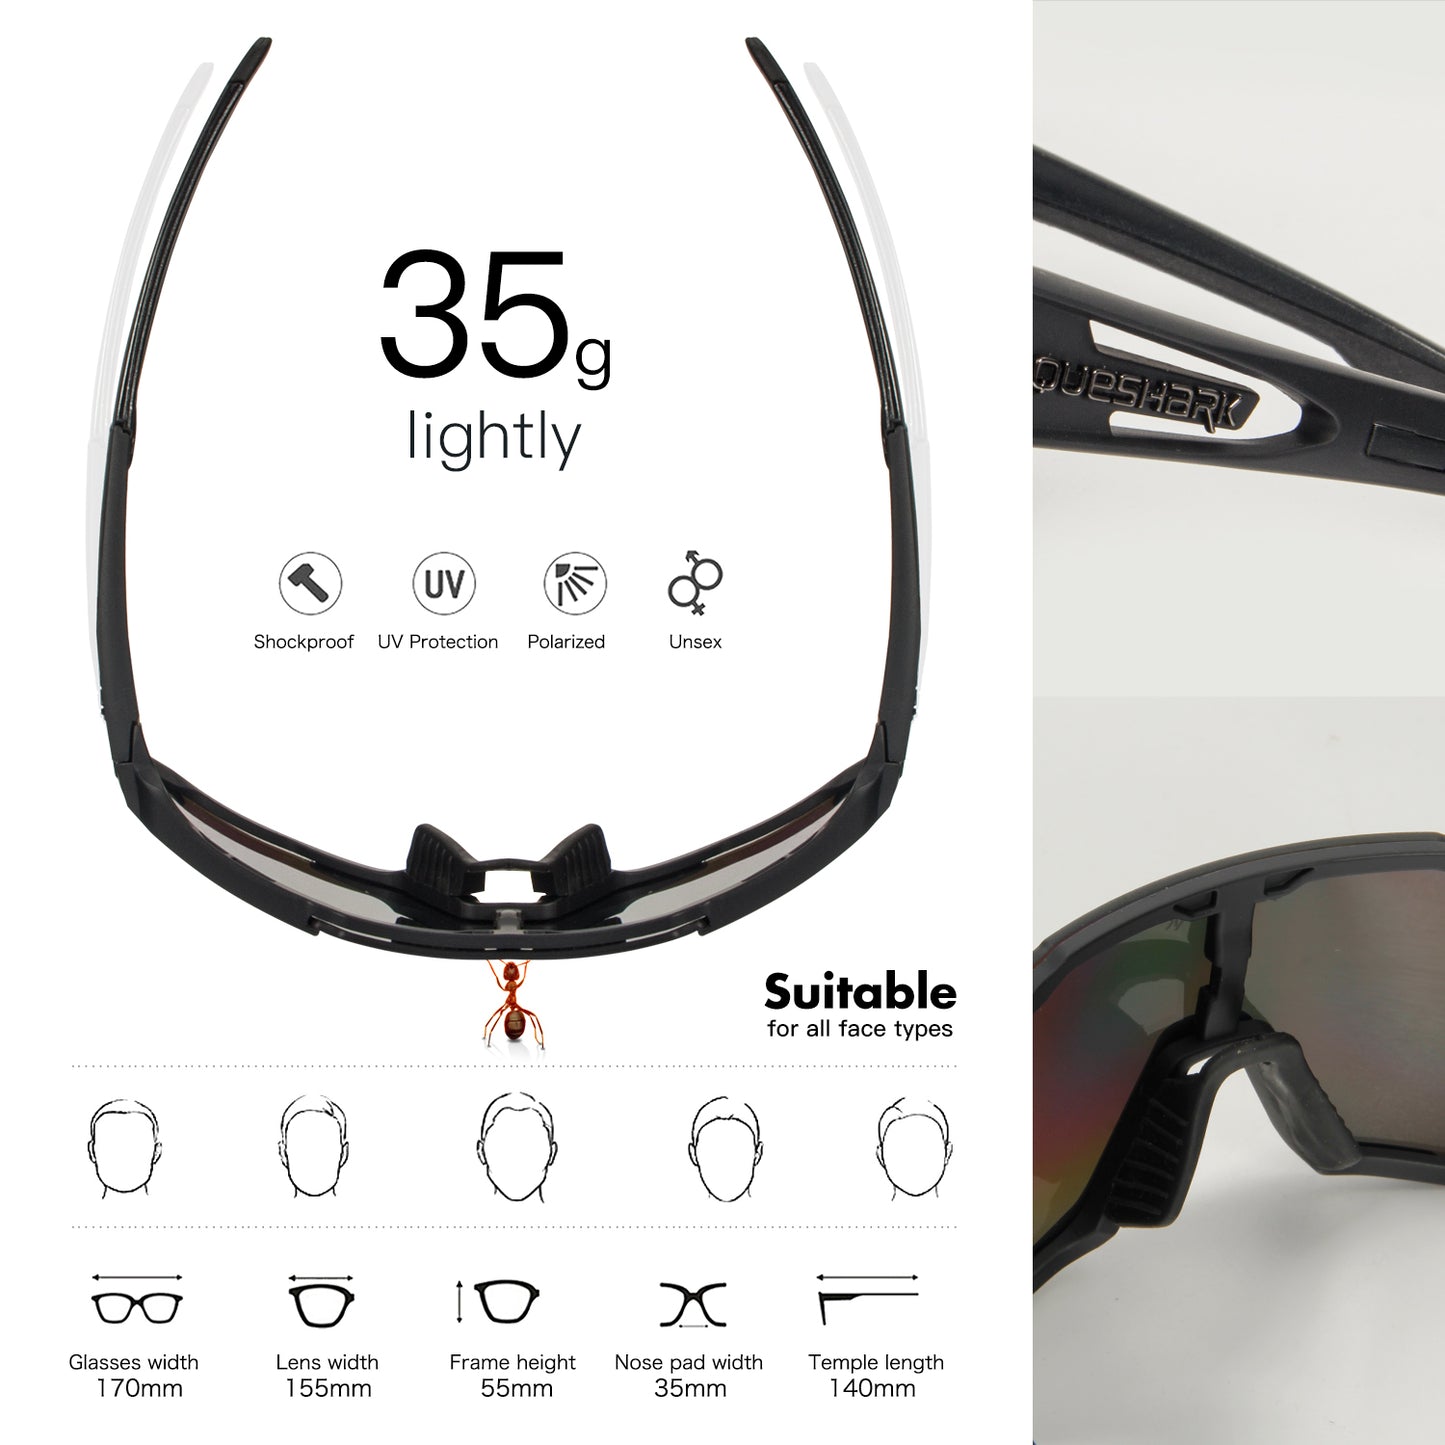 Óculos polarizados QE48 rosa óculos de sol bicicleta óculos ciclismo ciclismo óculos UV400 5 lentes/conjunto